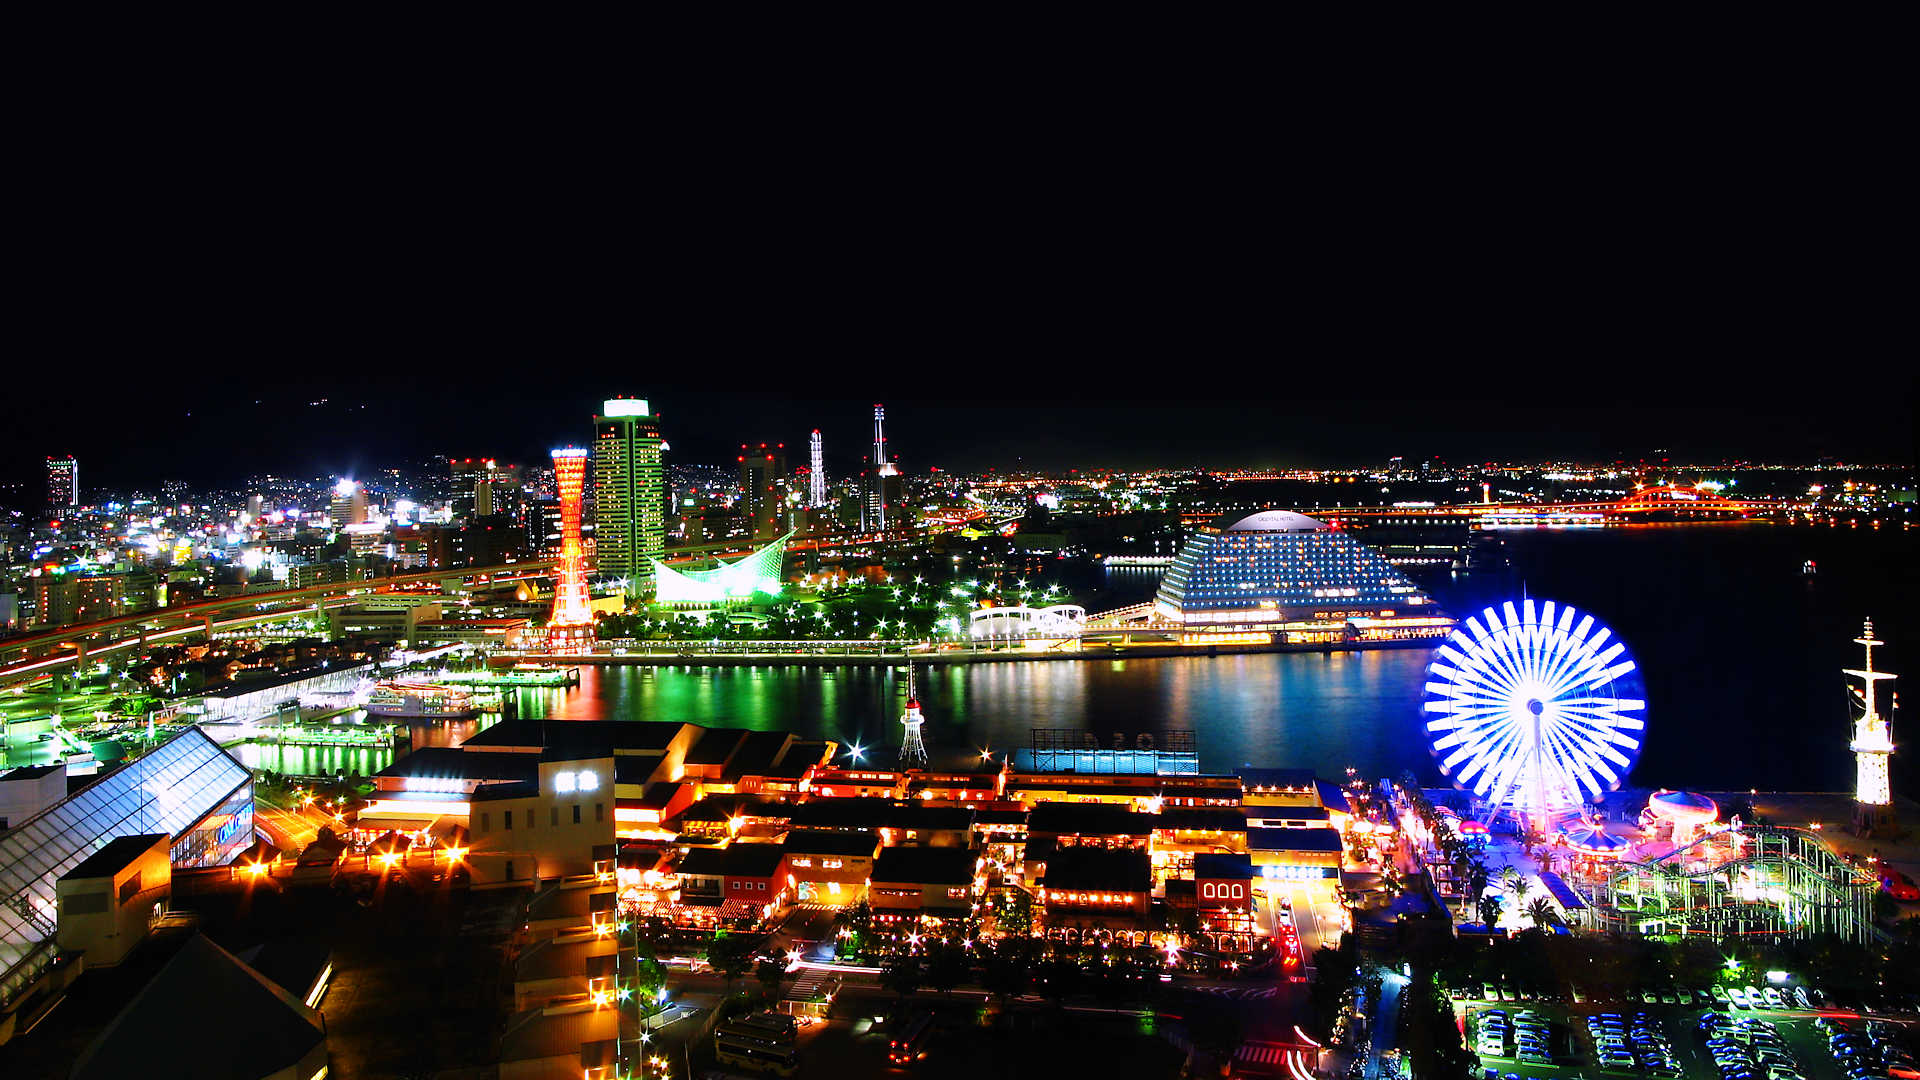 神戸夜景バスツアー 神戸の夜景スポットを巡るバスツアー